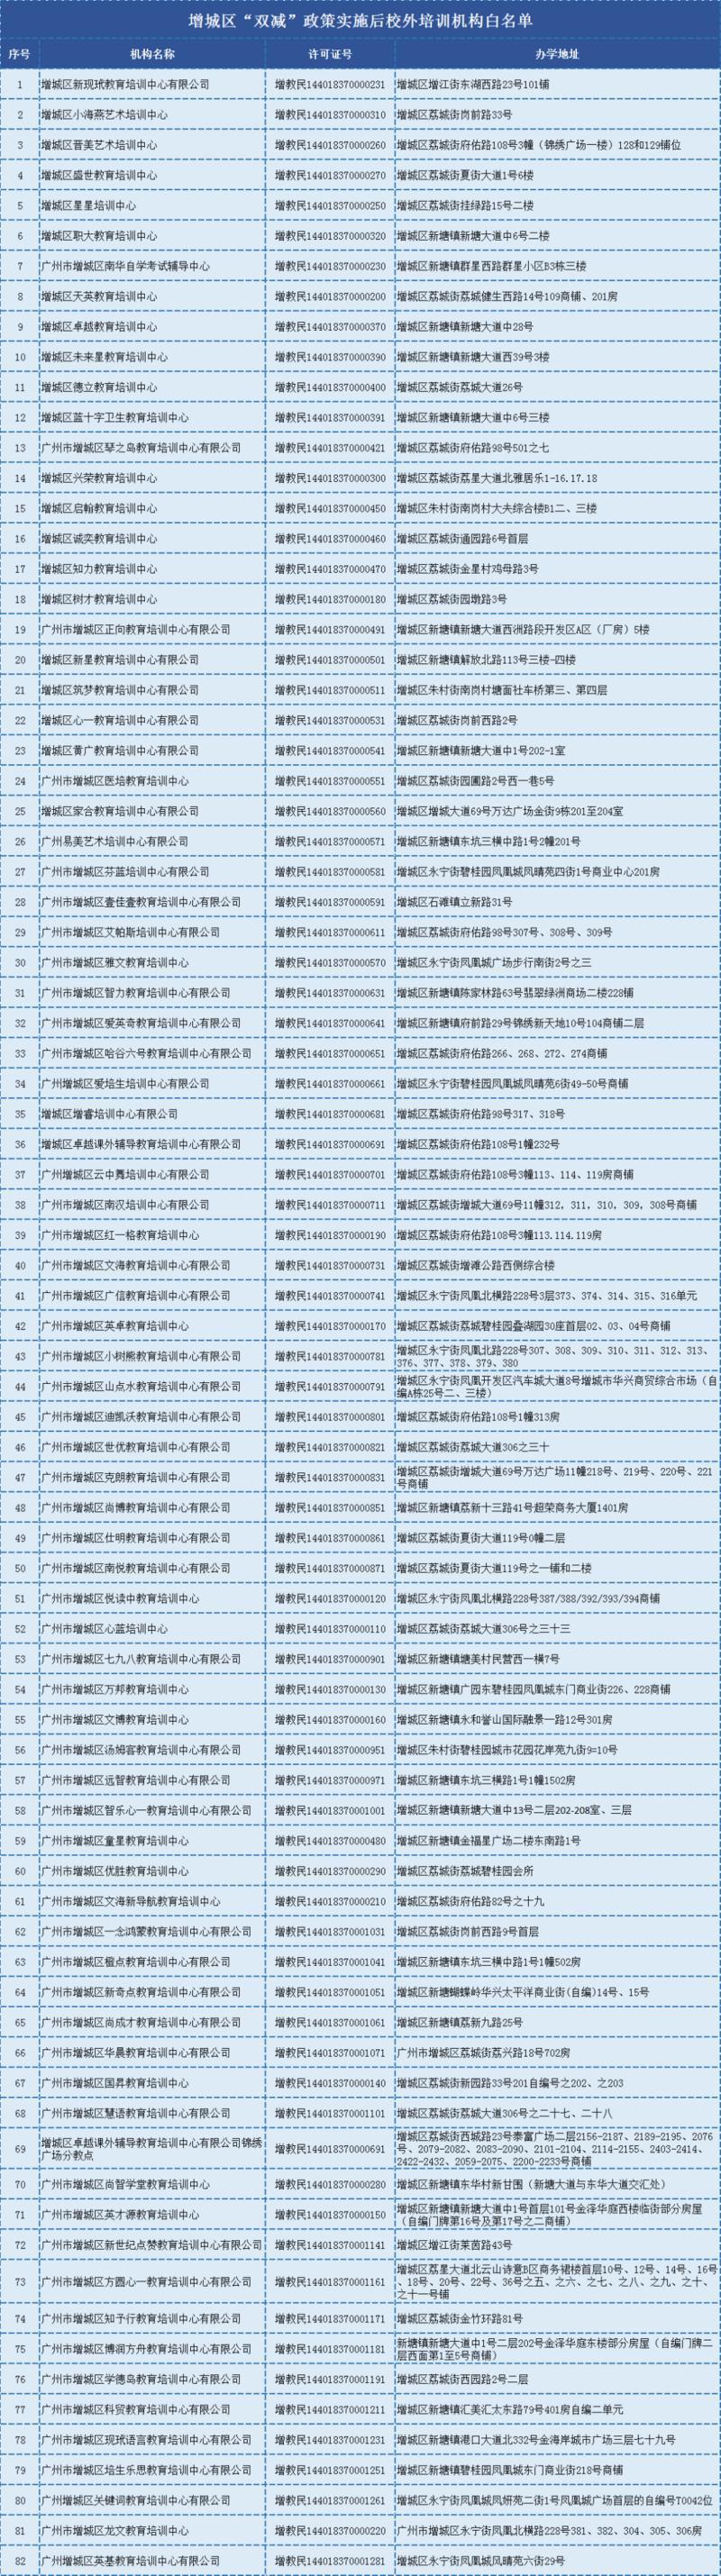 广州市增城区公布“双减”政策实施后 校外82间培训机构白名单